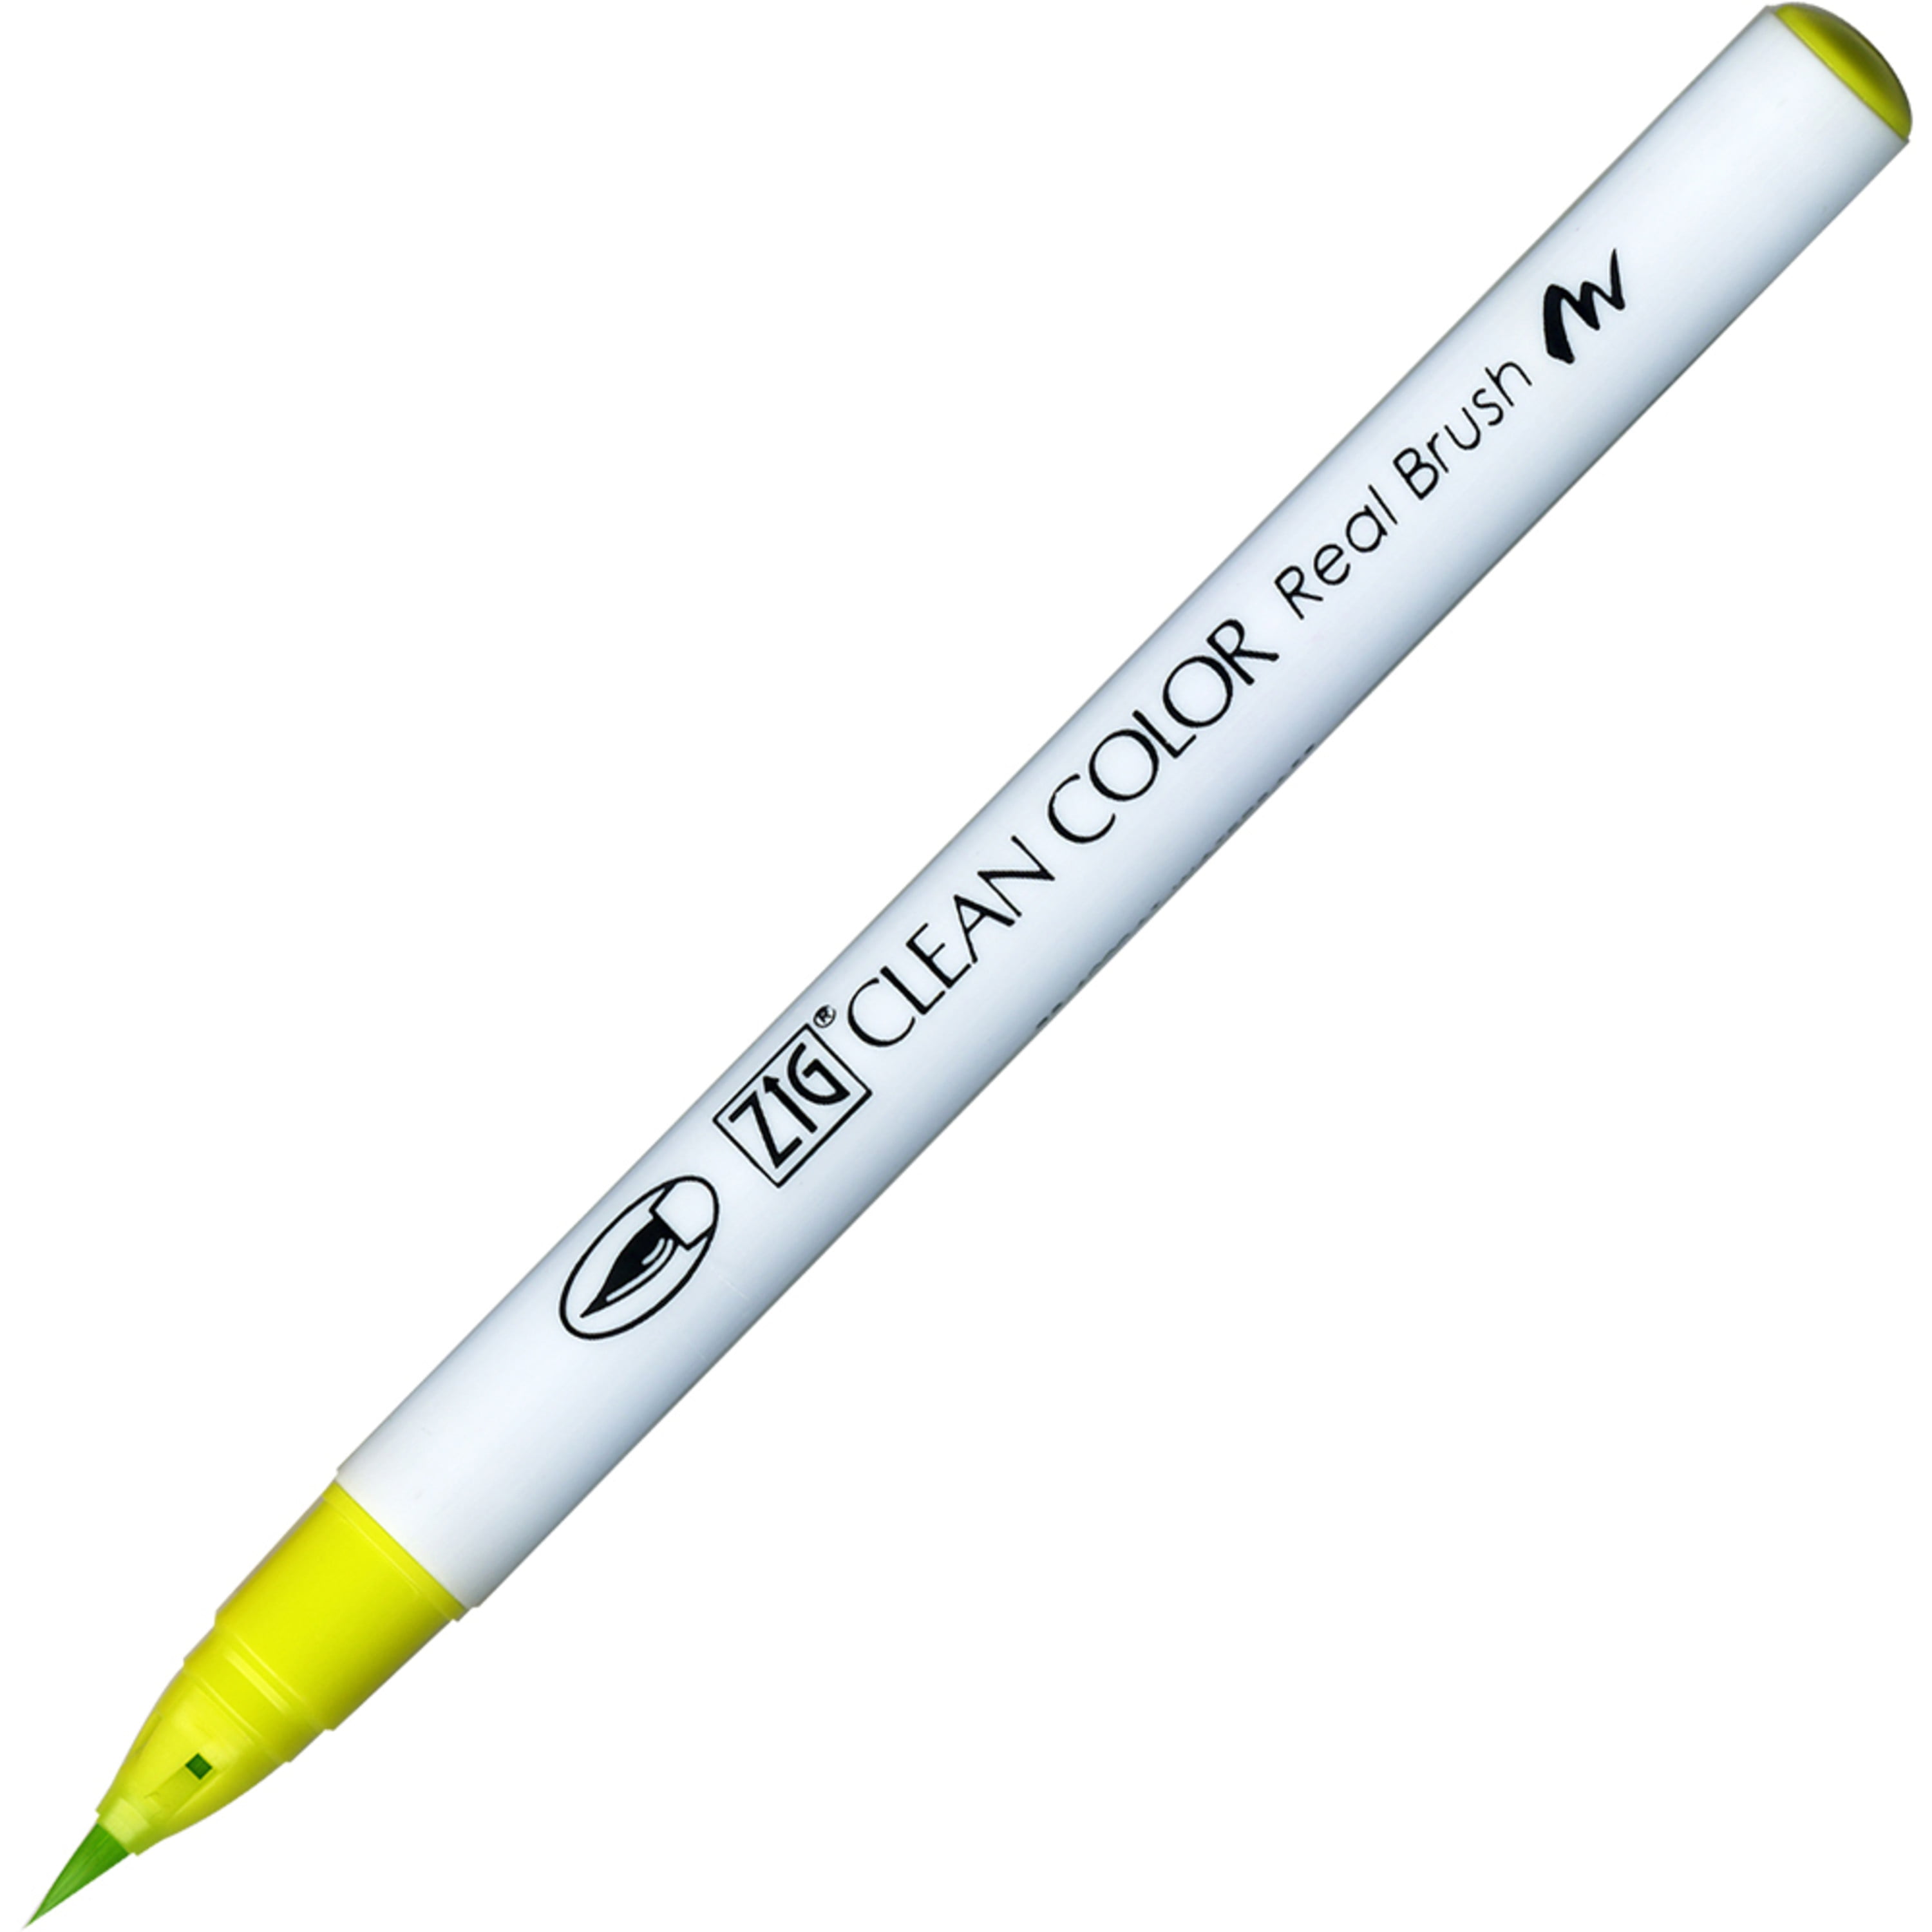 Kuretake Brush Pen Art Markers, Zig Permanent Markers